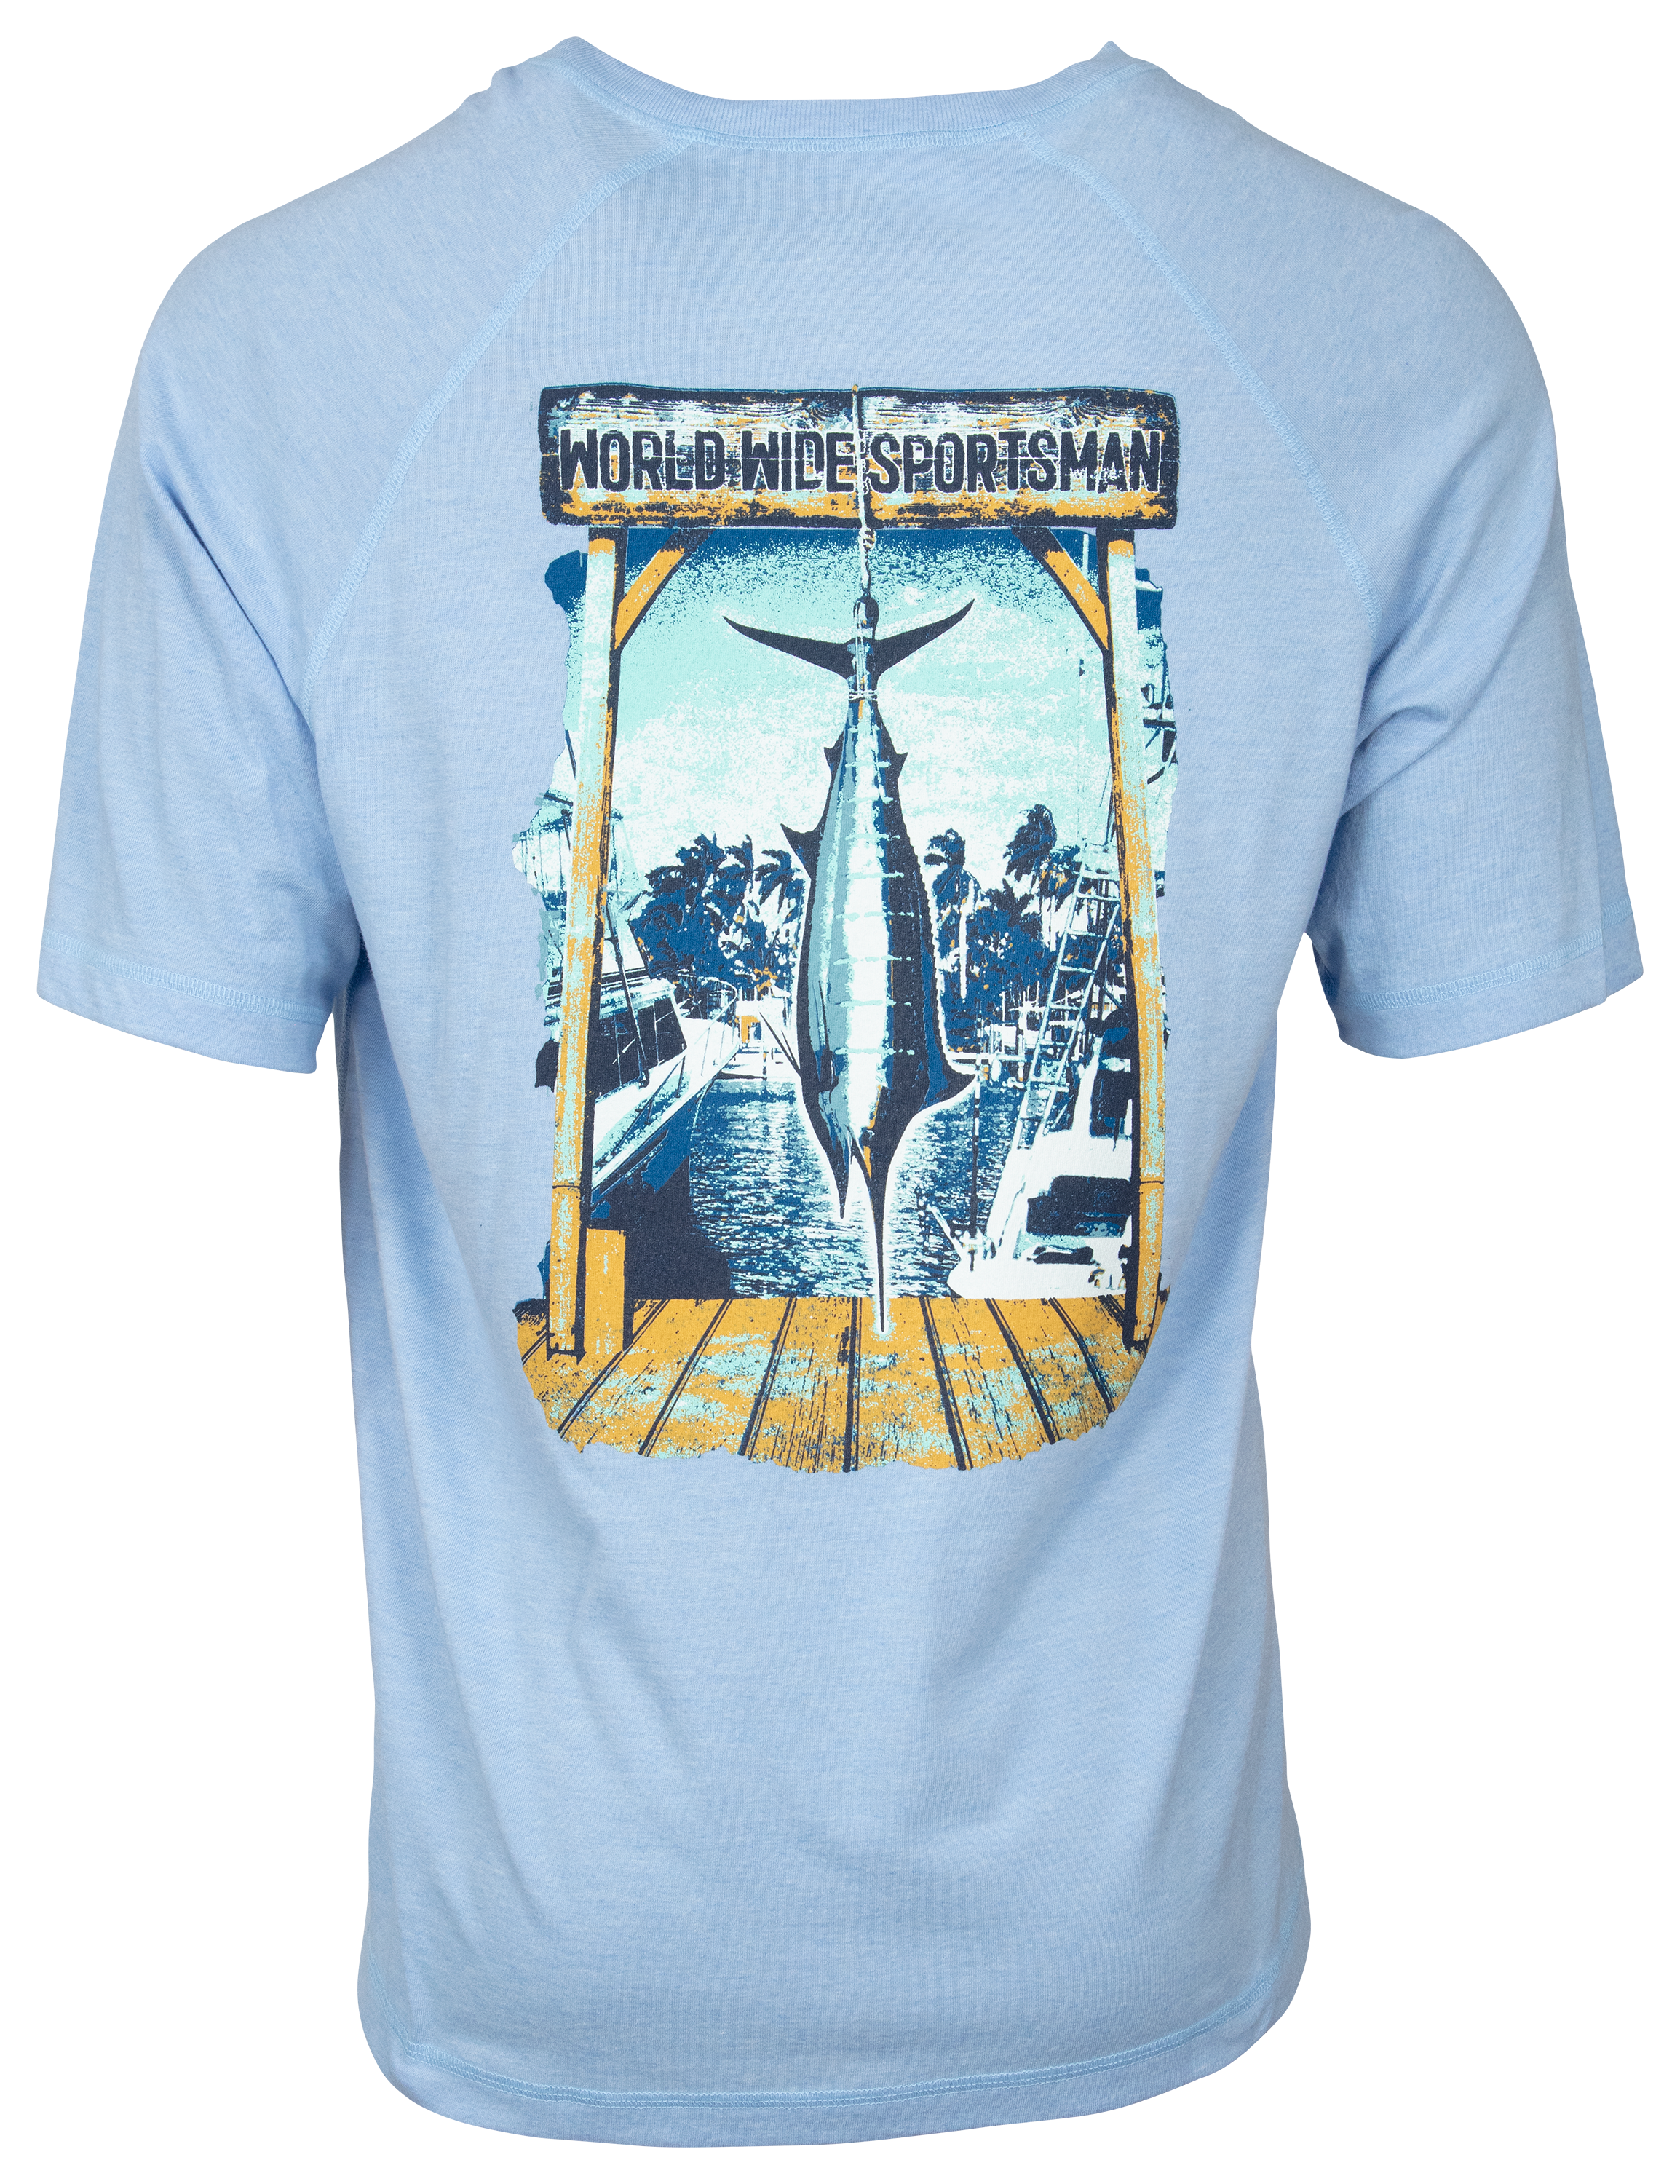 World Wide Sportsman Marlin Short-Sleeve T-Shirt for Men - Azure - 2XL